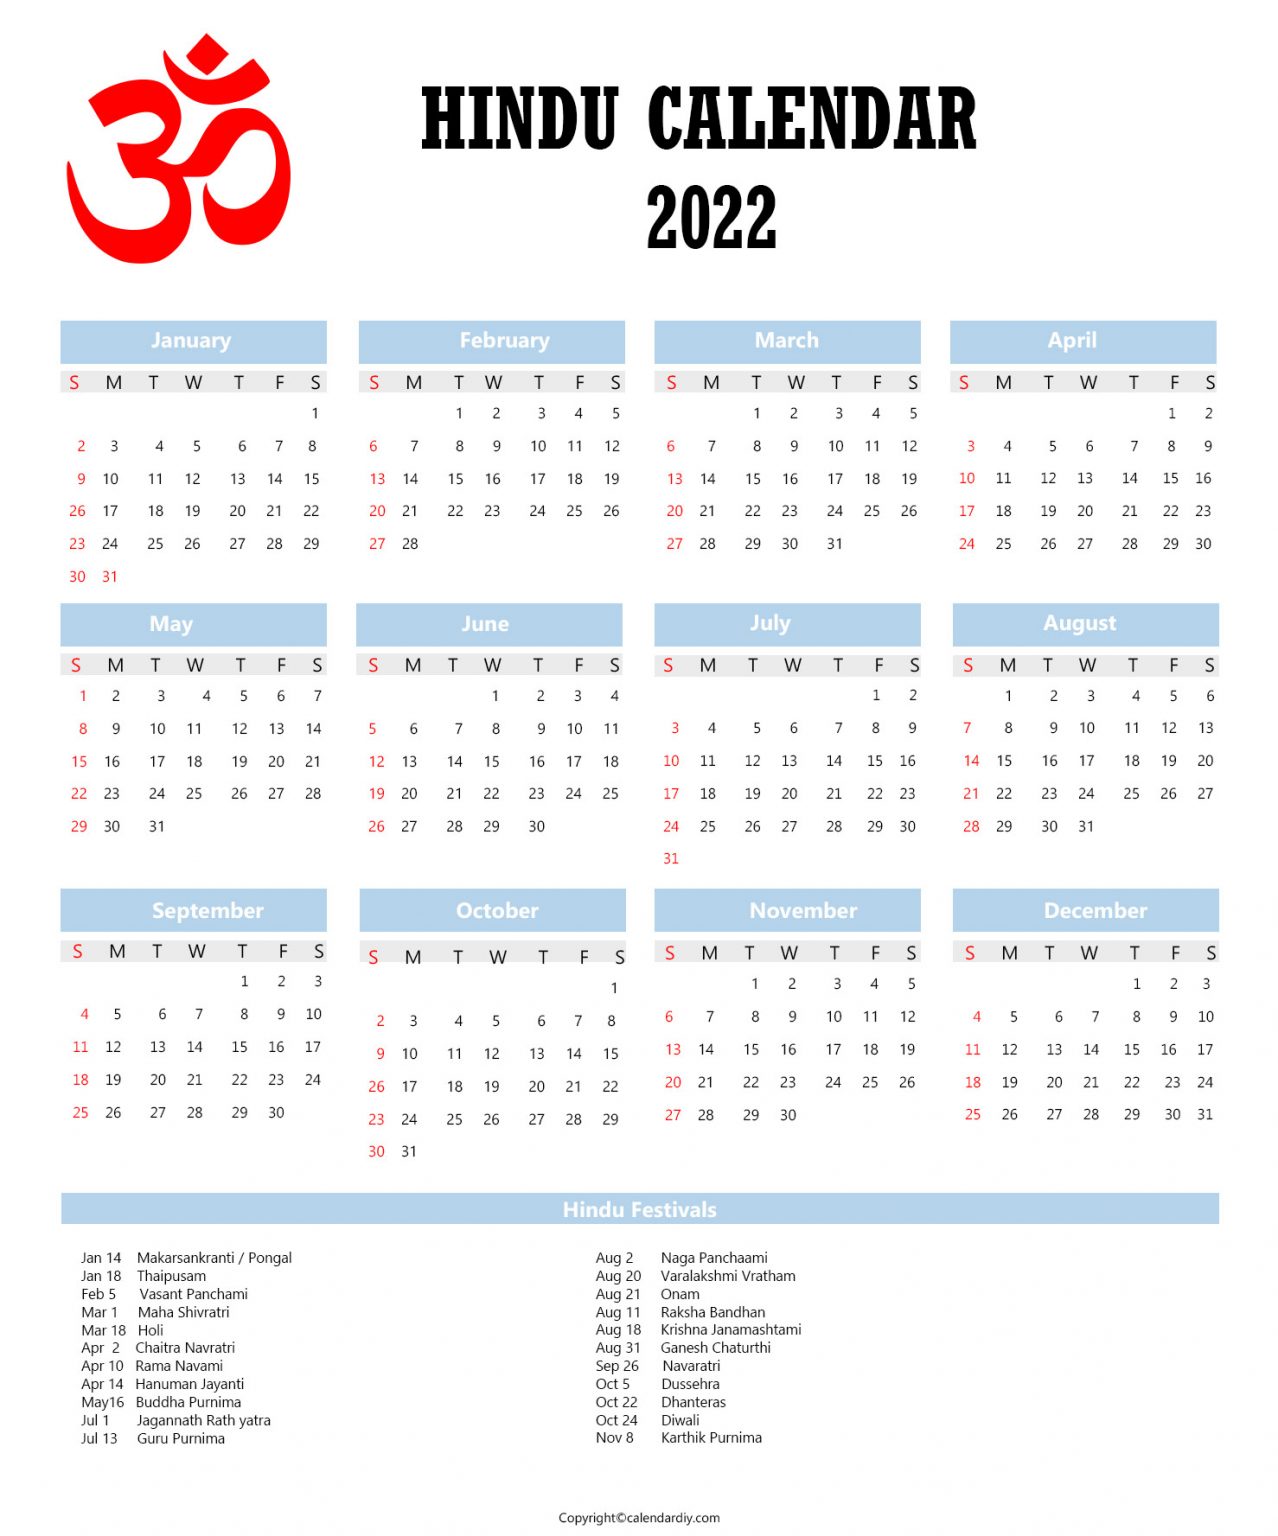 Hindu Calendar 2022 with Tithi Hindu Panchang 2022